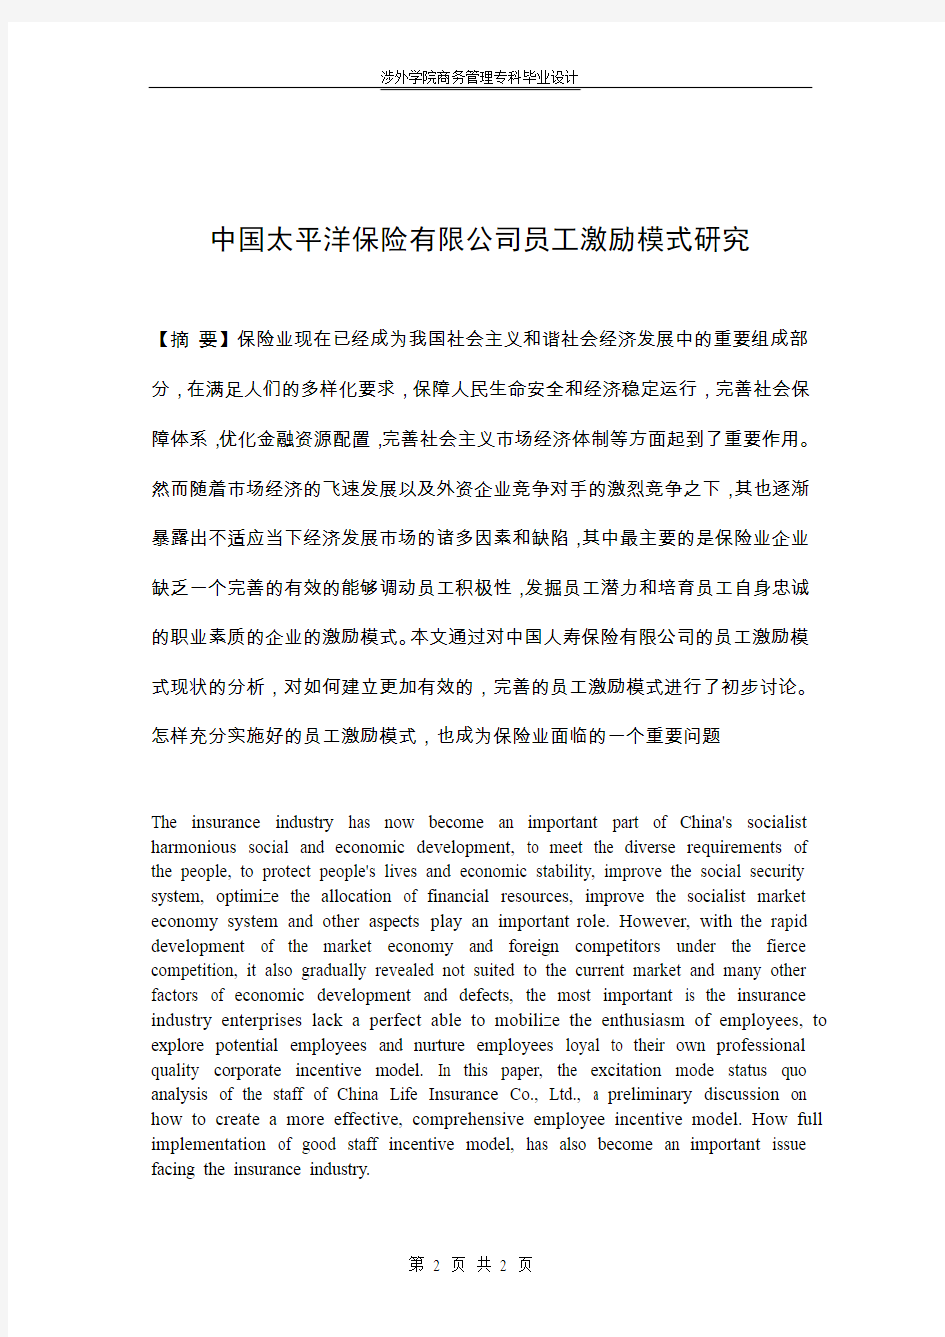 中国太平洋保险有限公司员工激励模式研究